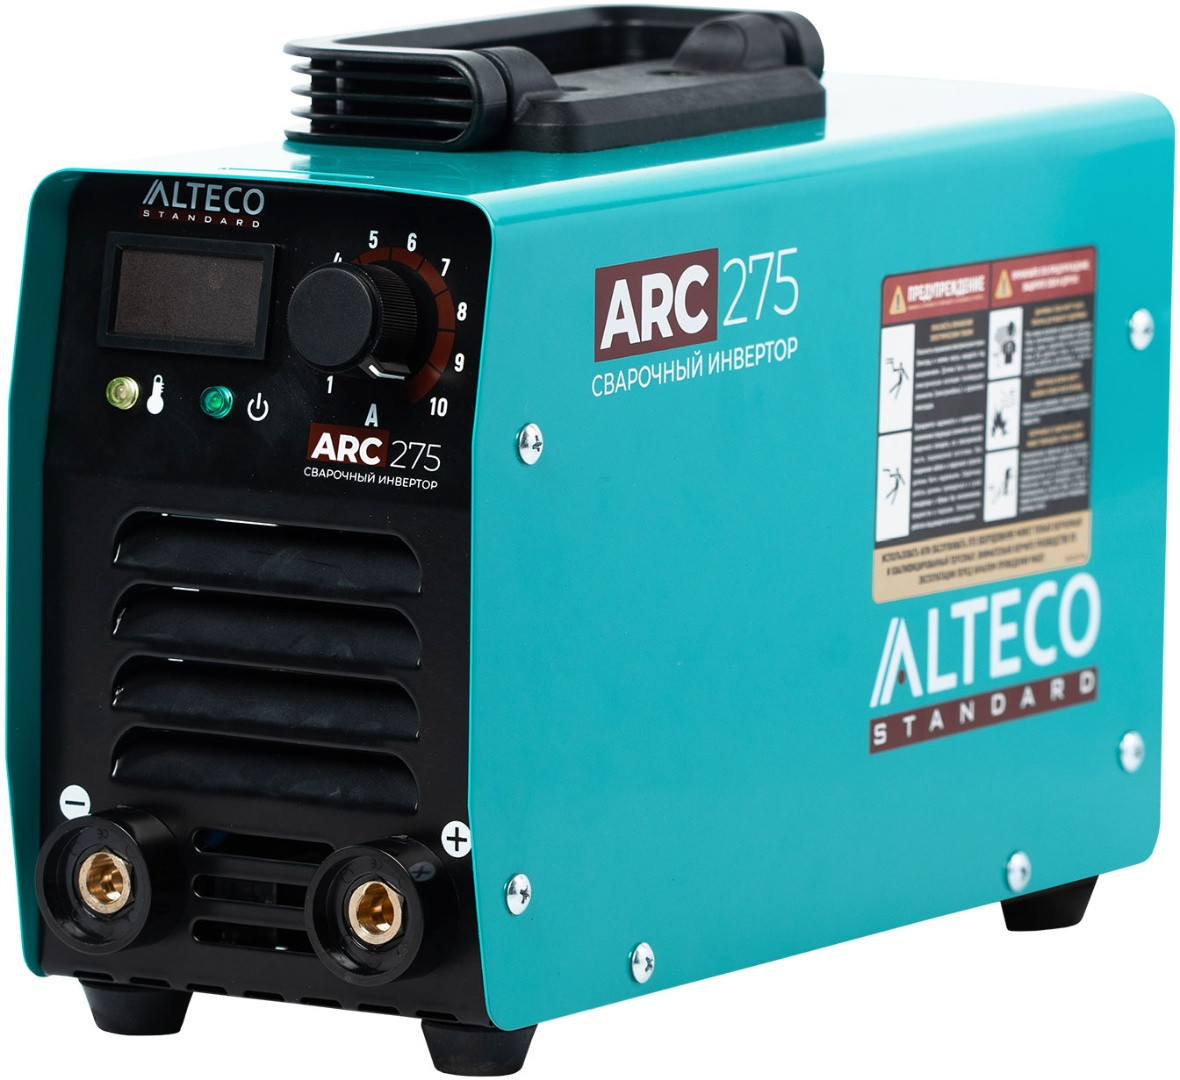 Сварочный аппарат ALTECO Standart ARC-275, фото 1